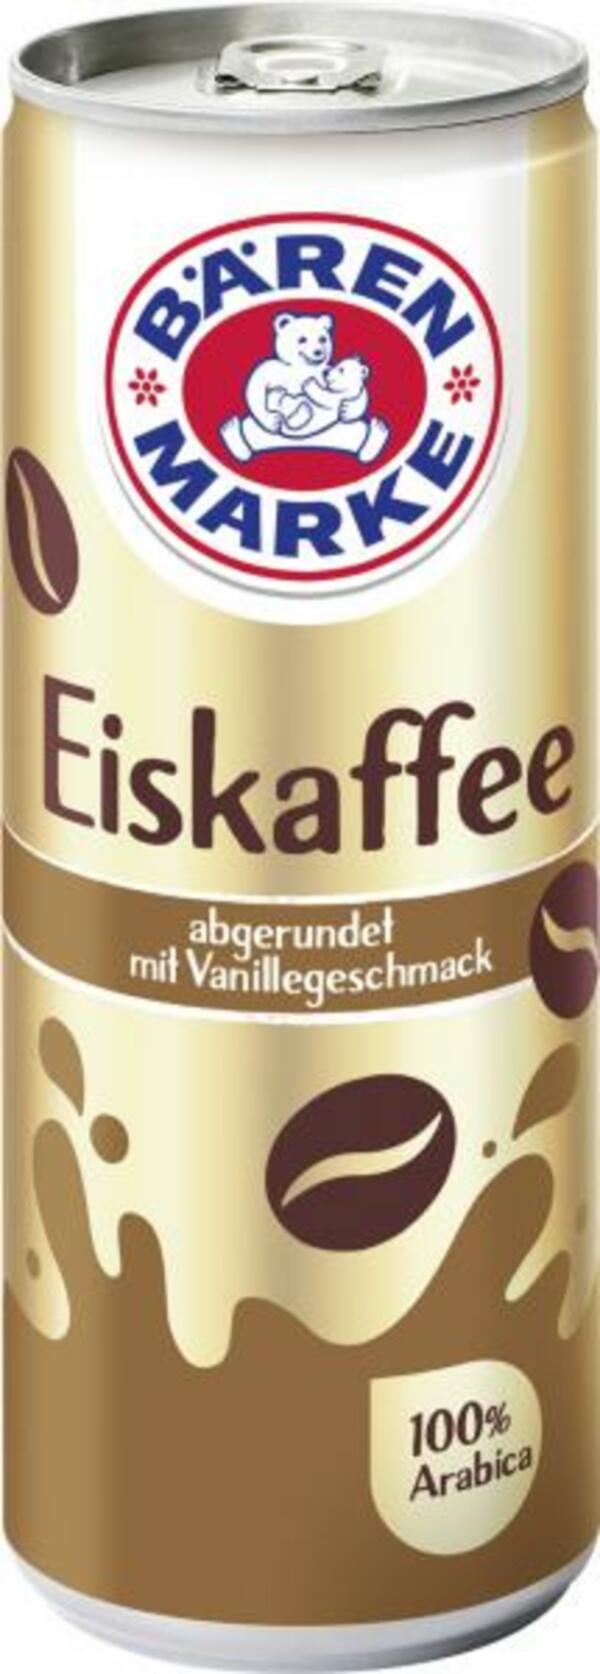 Bild 1 von Bärenmarke Eiskaffee